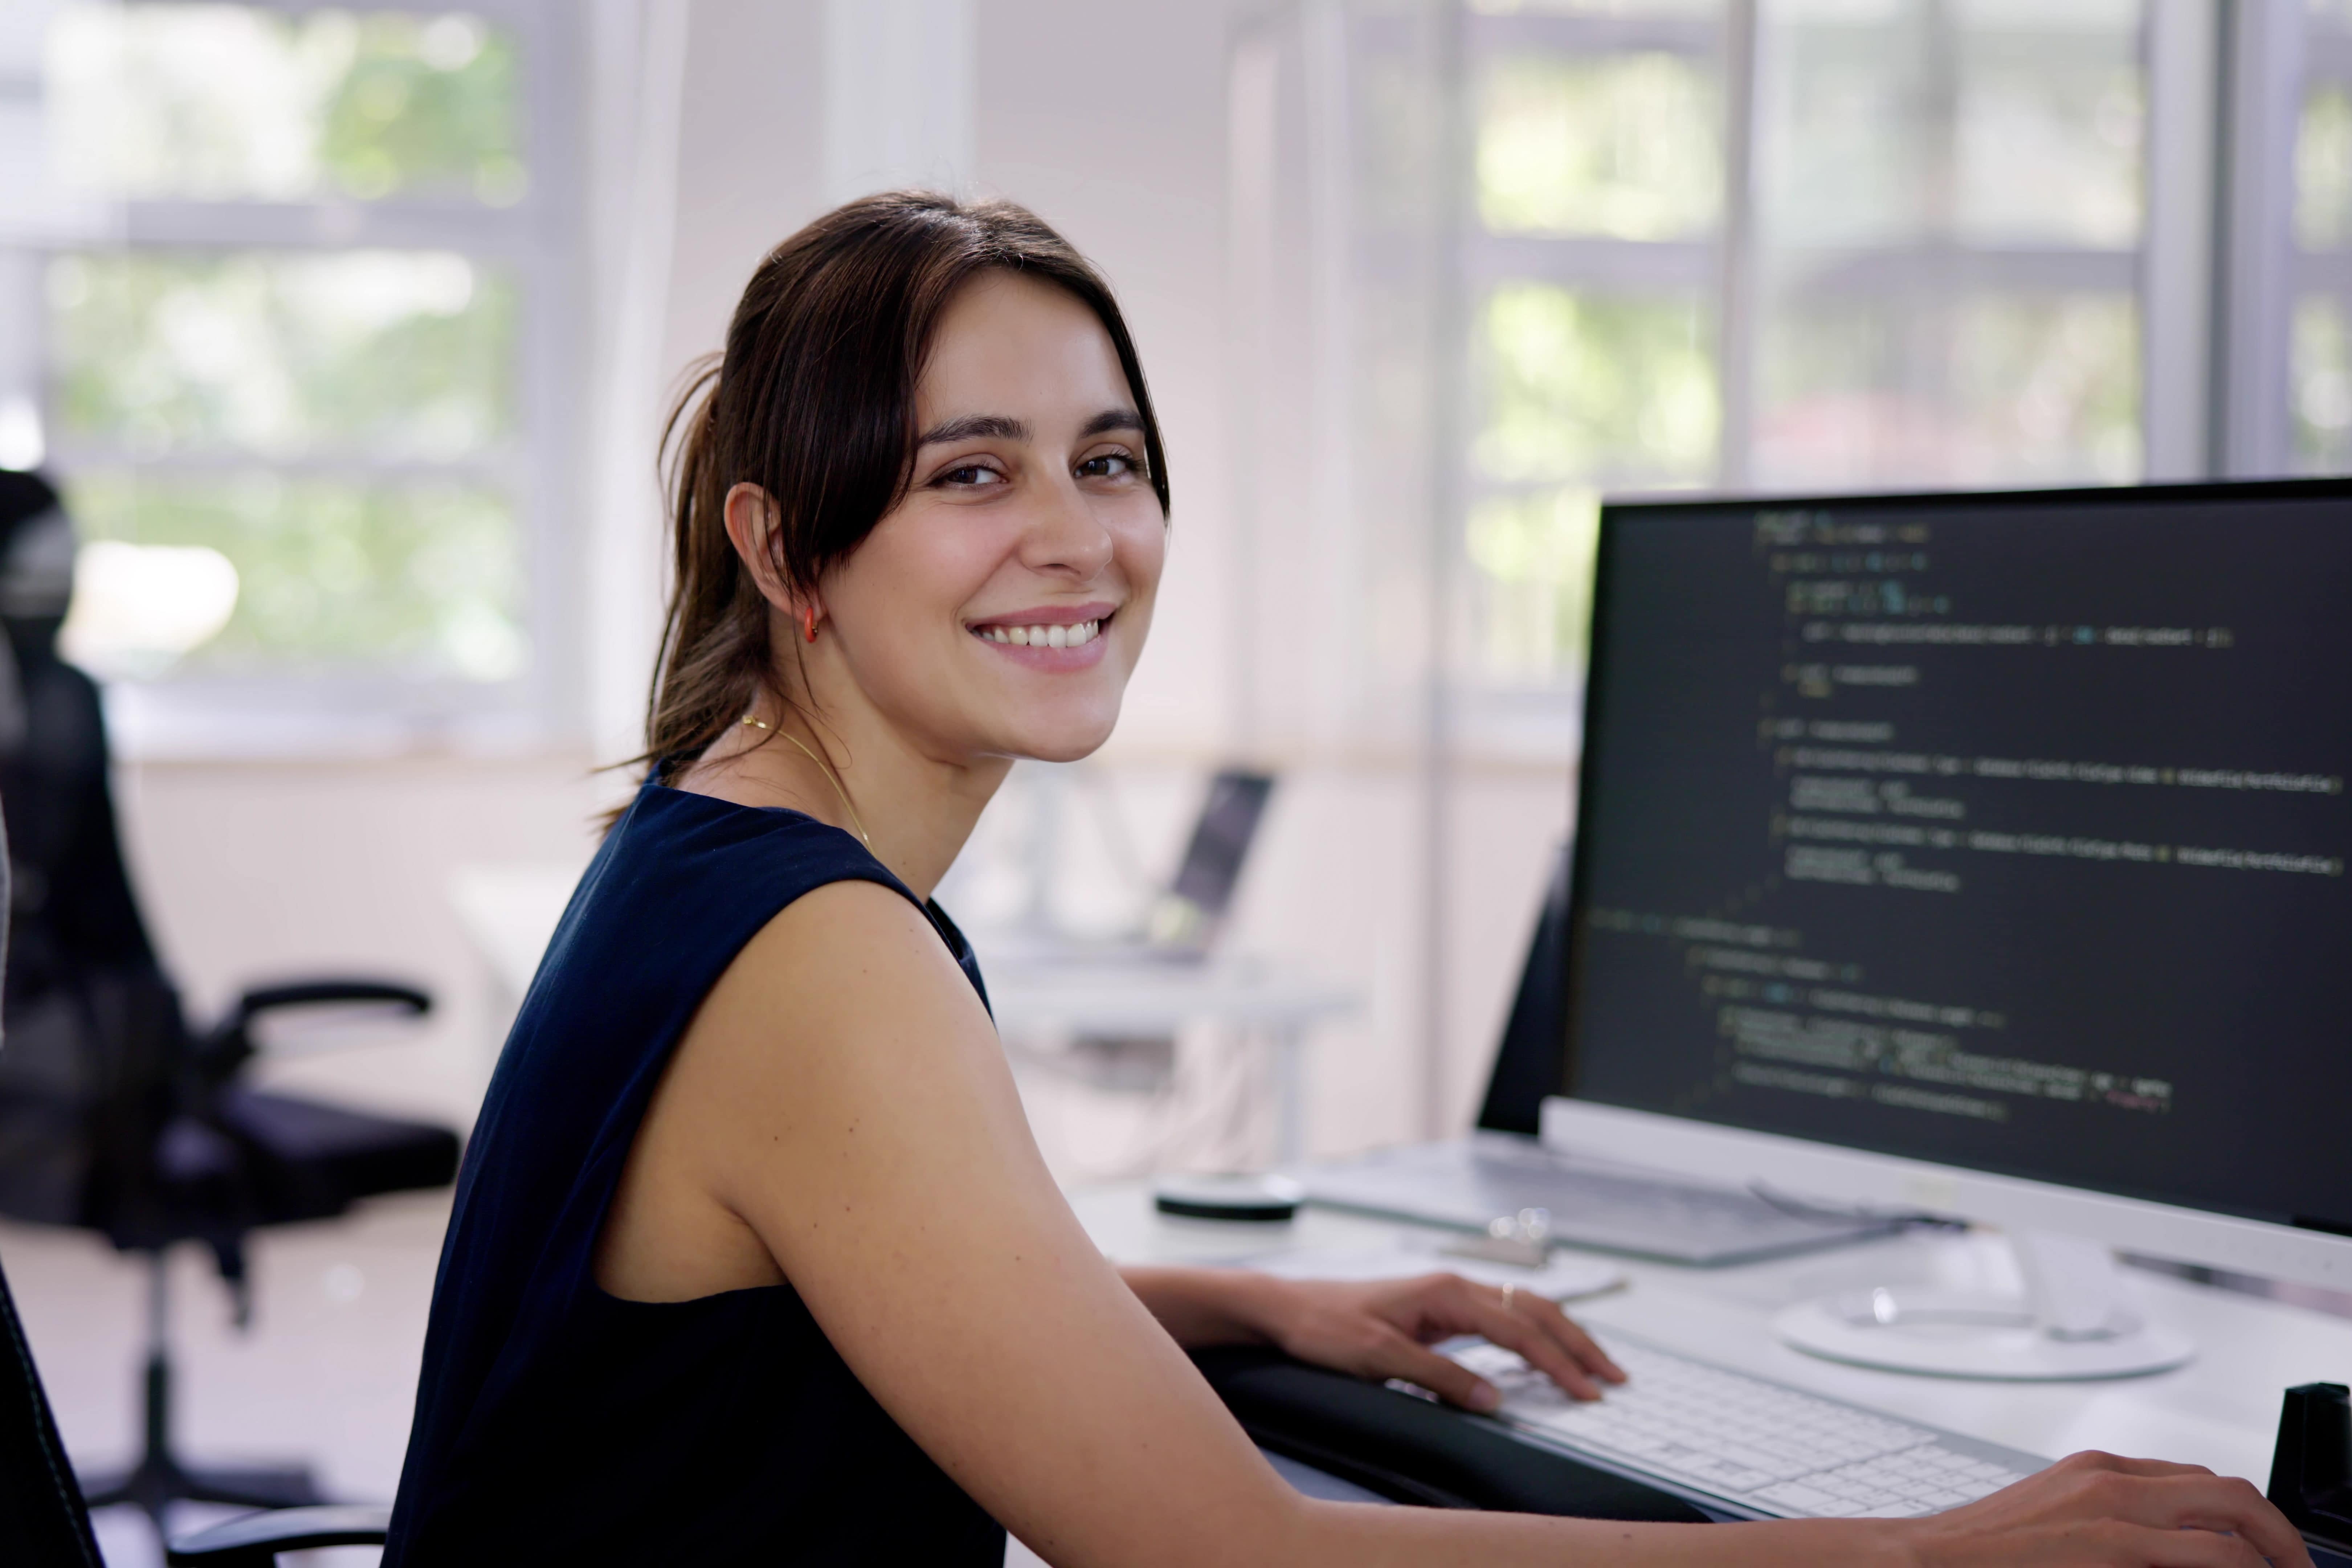  Imagem de uma mulher branca, sorrindo, trabalhando na área de análise e desenvolvimento de sistemas em um escritório.